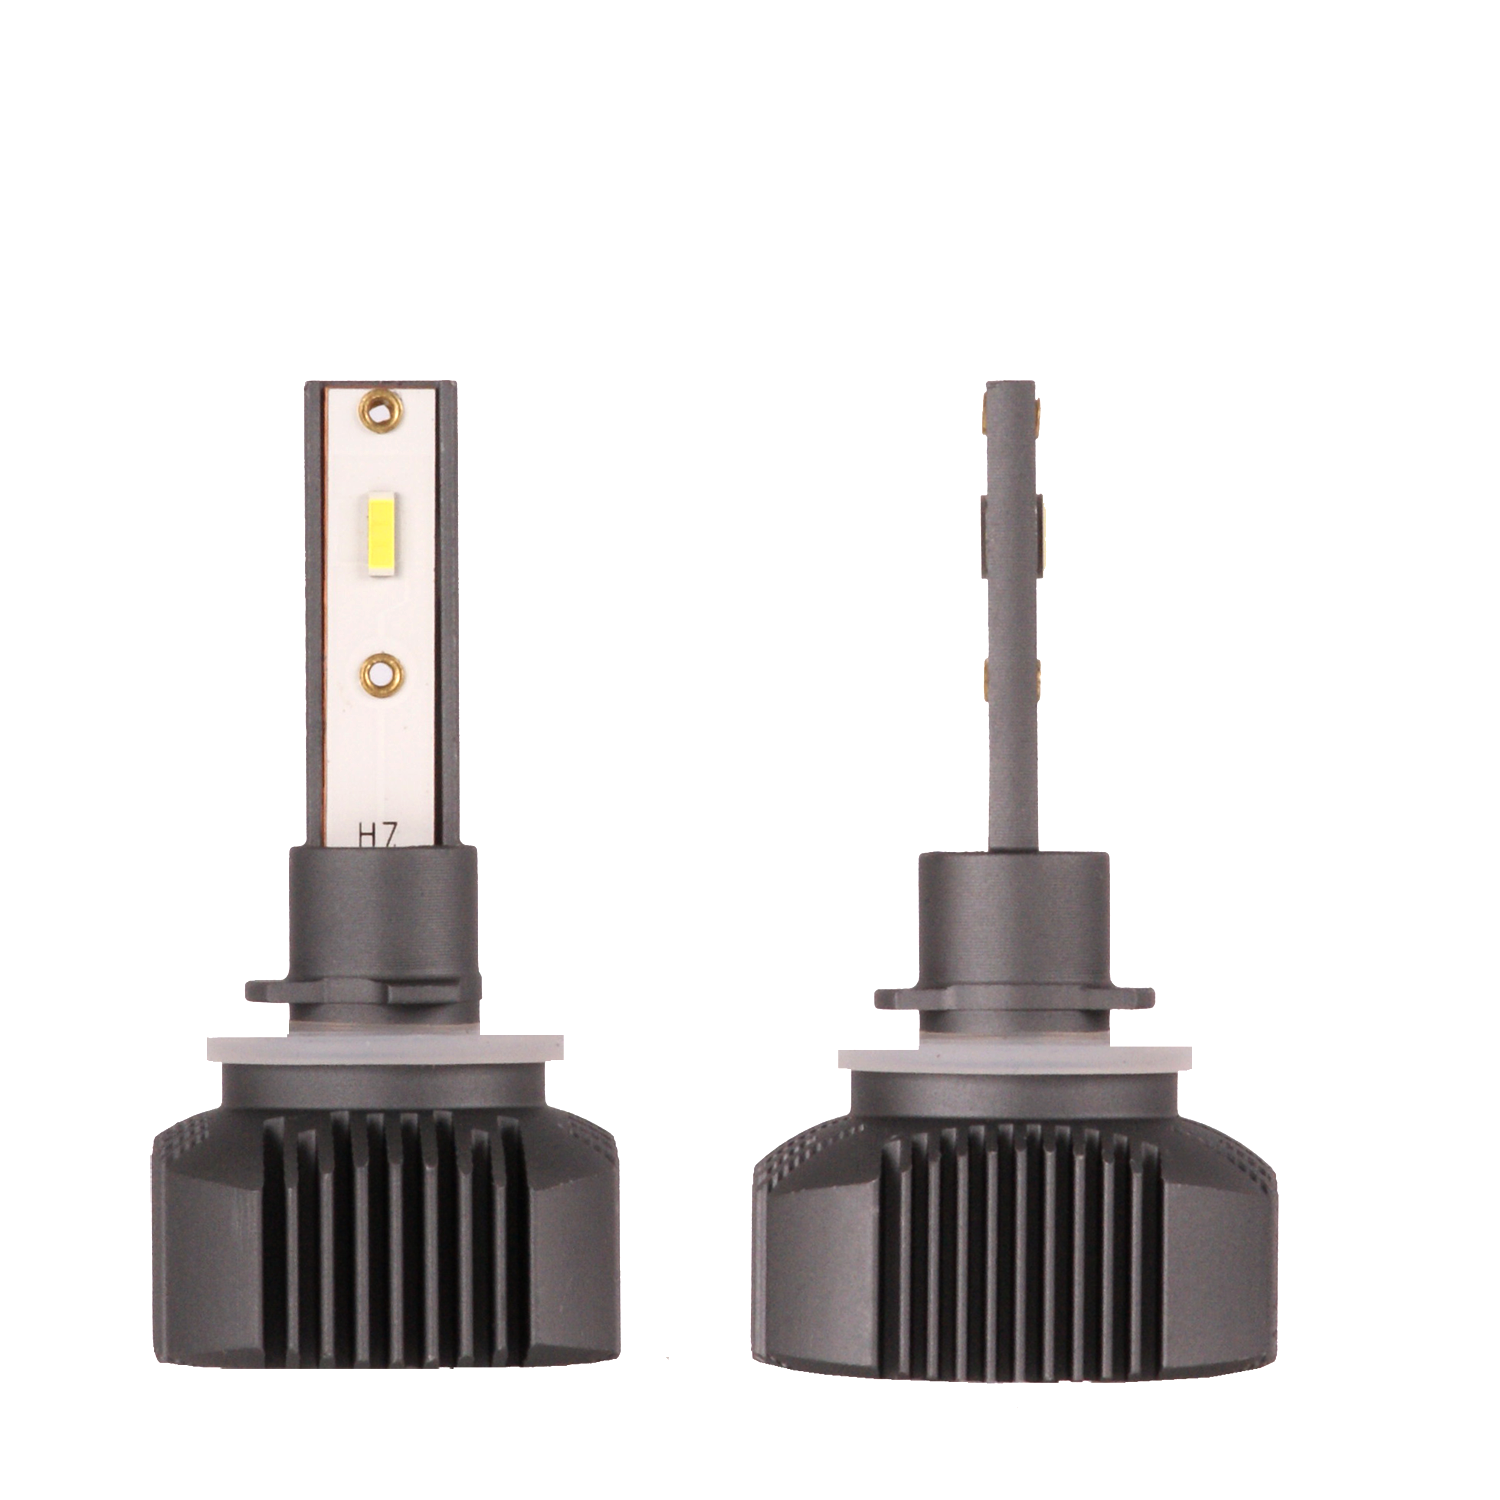 Светодиодные лампы Vizant D5 NEW цоколь H27 880 с чипом TAIWAN COB 5200lm 5000k (цена за 2 лампы)